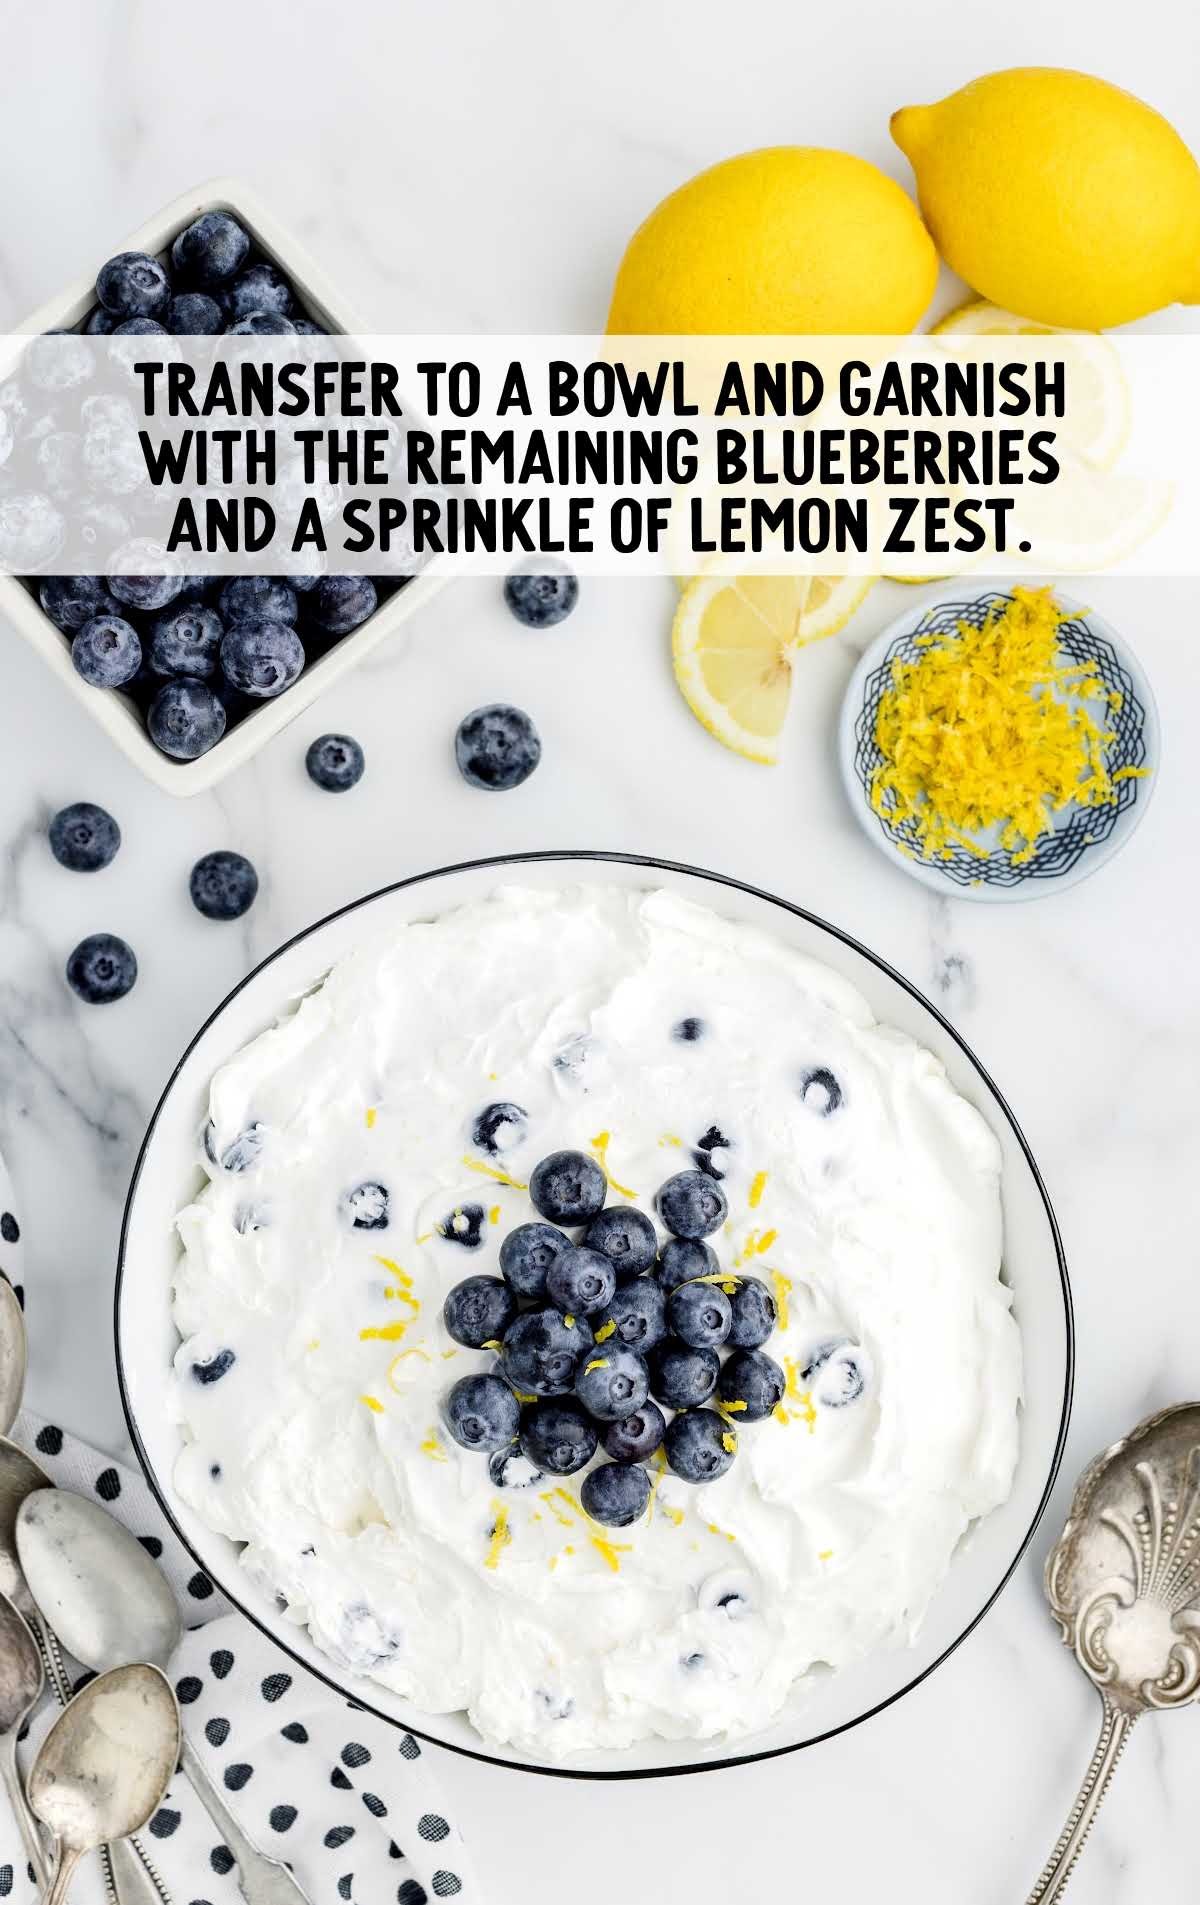 blueberries garnished and lemon zest sprinkled